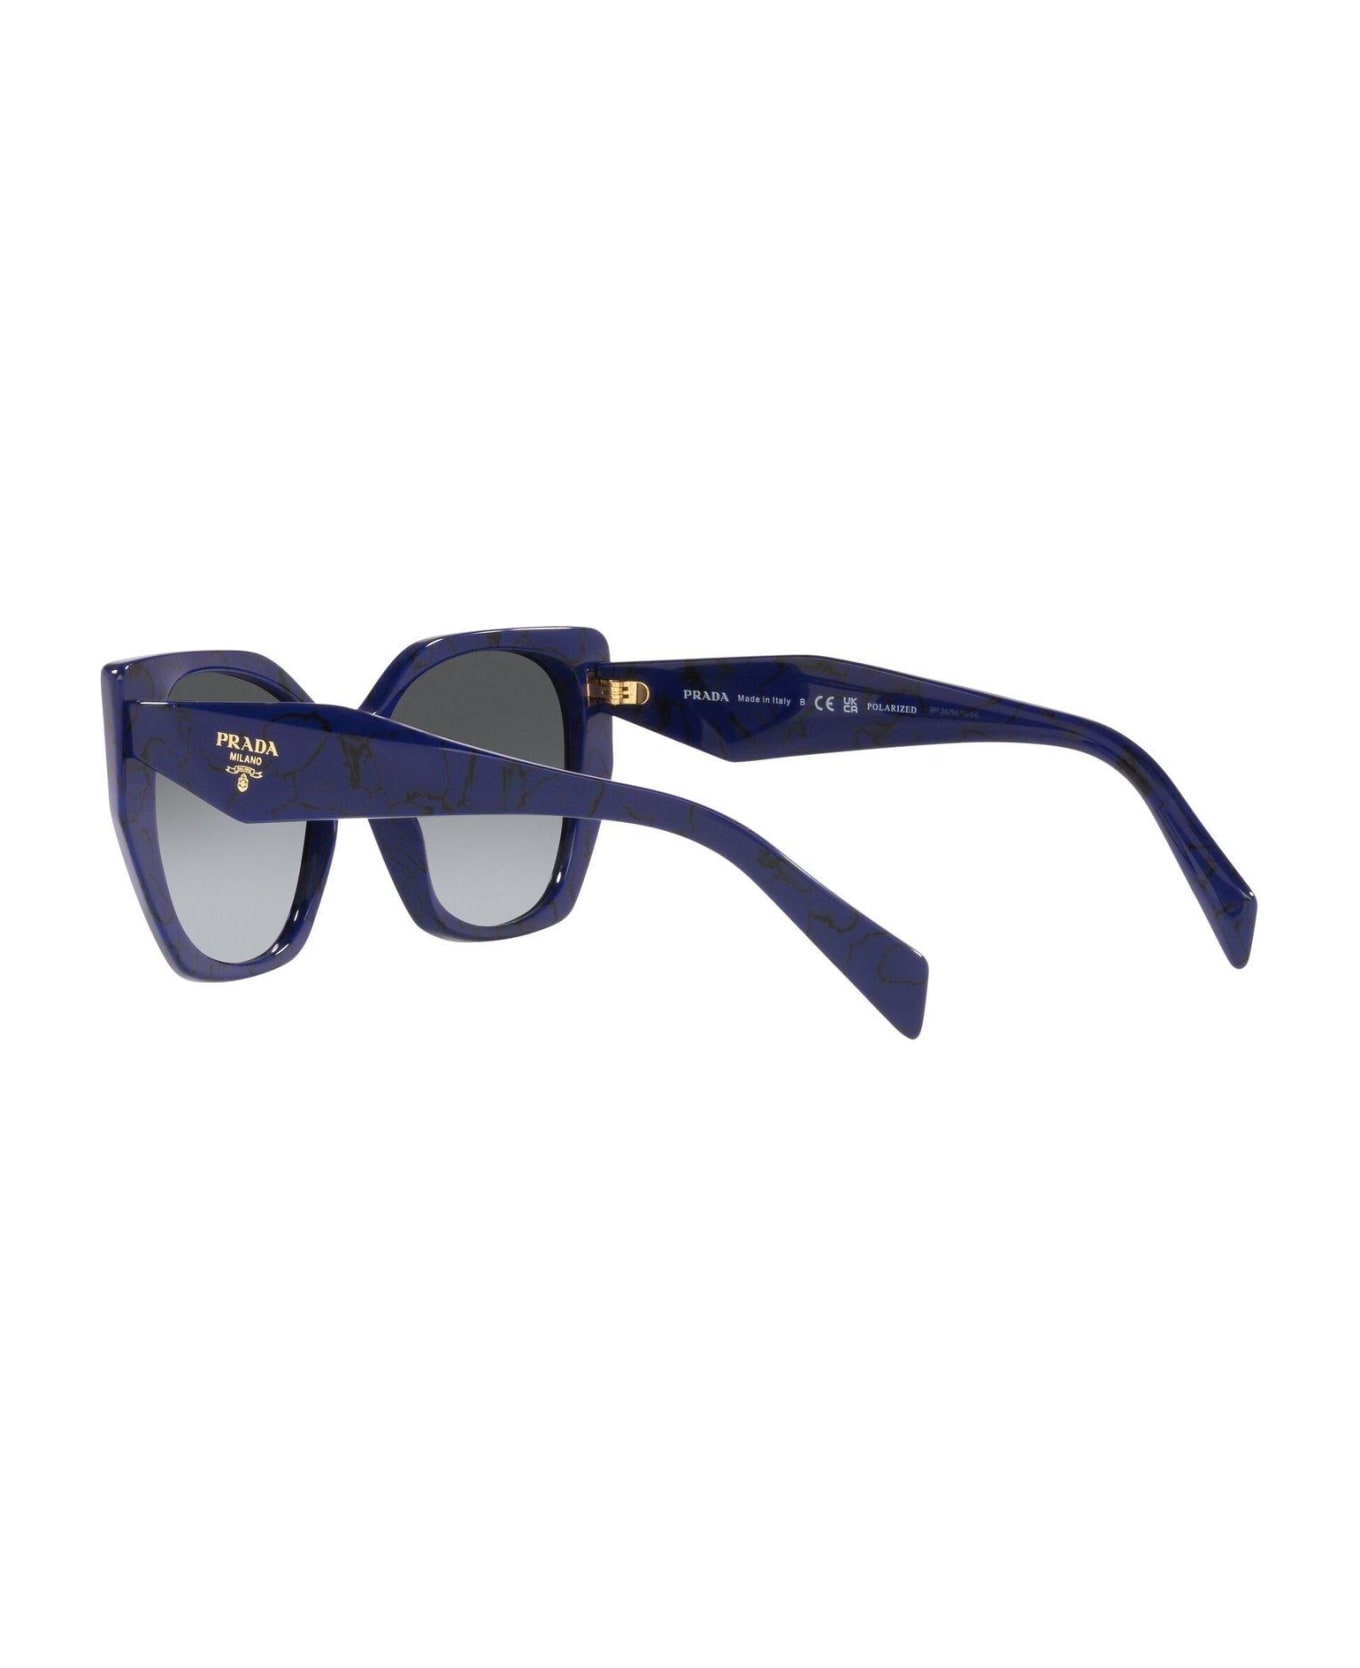 Prada Eyewear Cat-eye Frame Sunglasses - 18D5W1